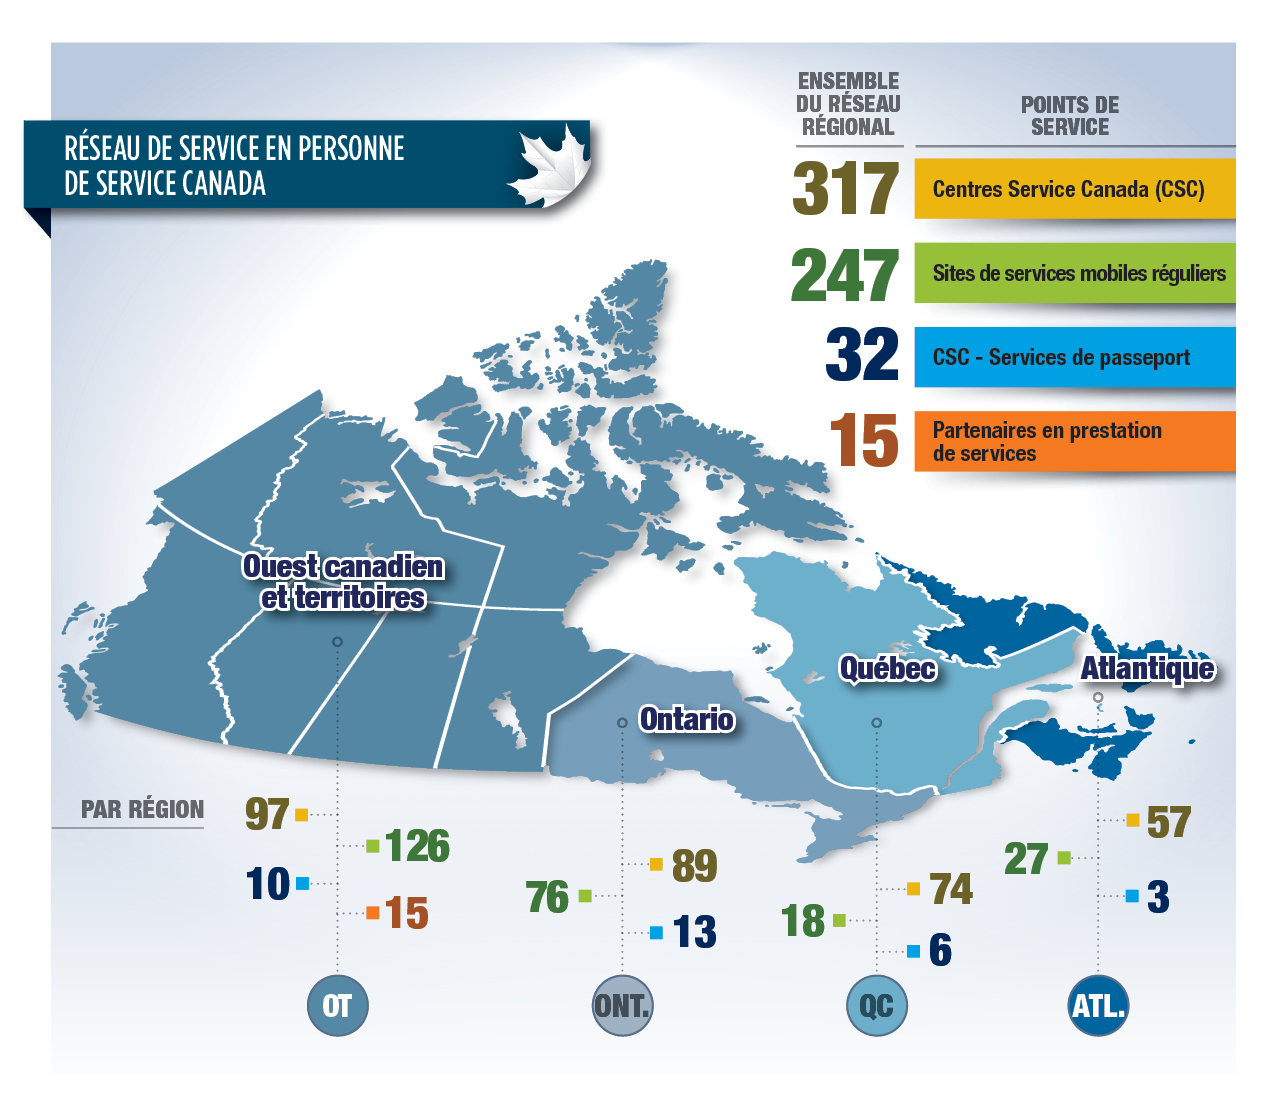 Figure 2 : Réseau de service en personne de Service Canada